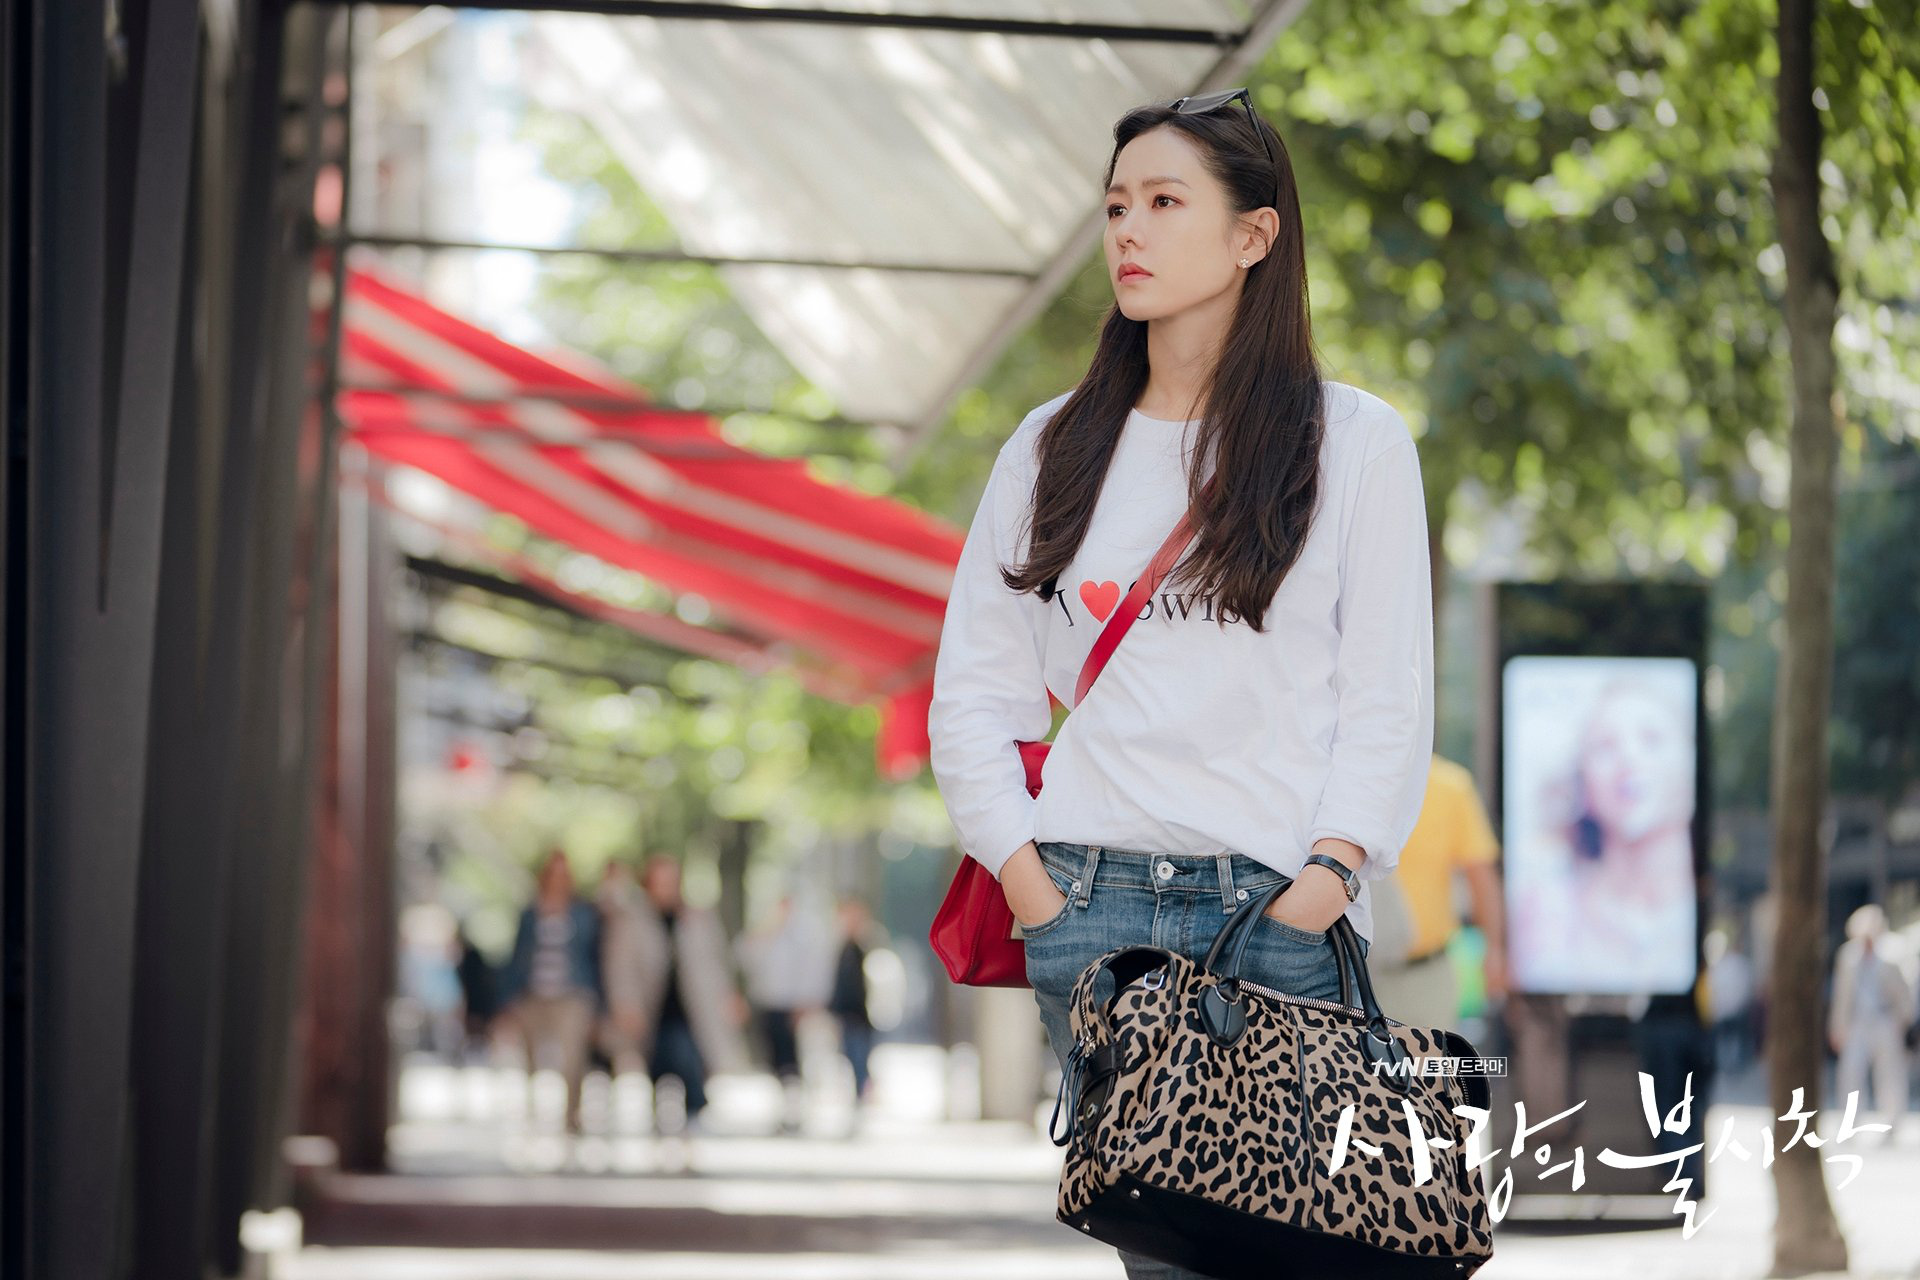  Trở lại với đời thường, diện quần jeans với áo phông đơn giản, kiểu tóc suông thẳng lại mang lại nét năng động, trẻ trung cho hình ảnh của nữ tài phiệt Yoon Se Ri.